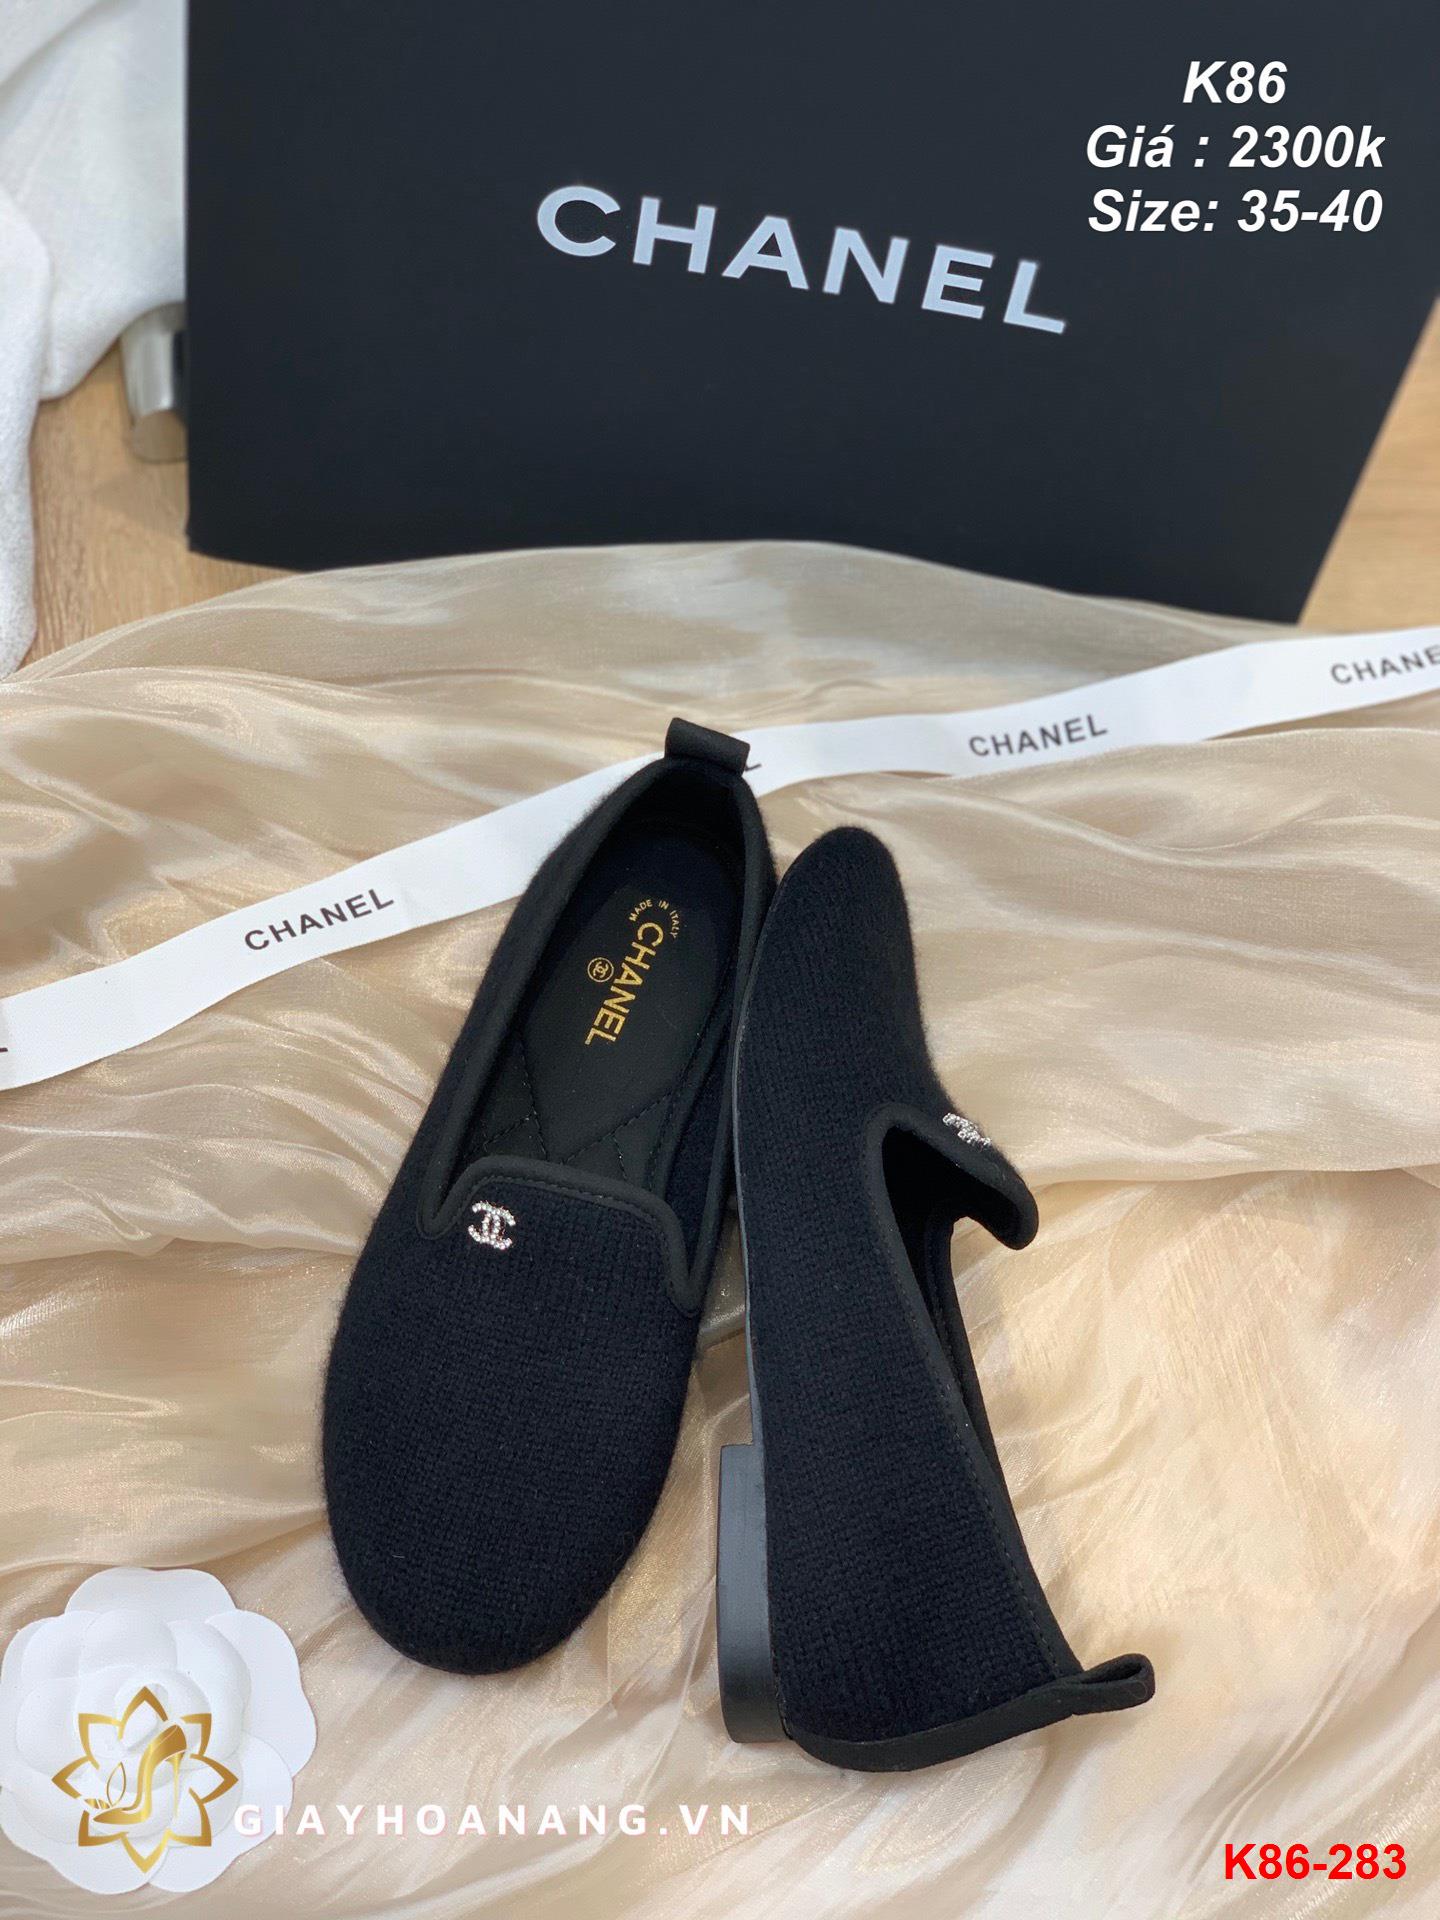 K86-283 Chanel giày lười siêu cấp